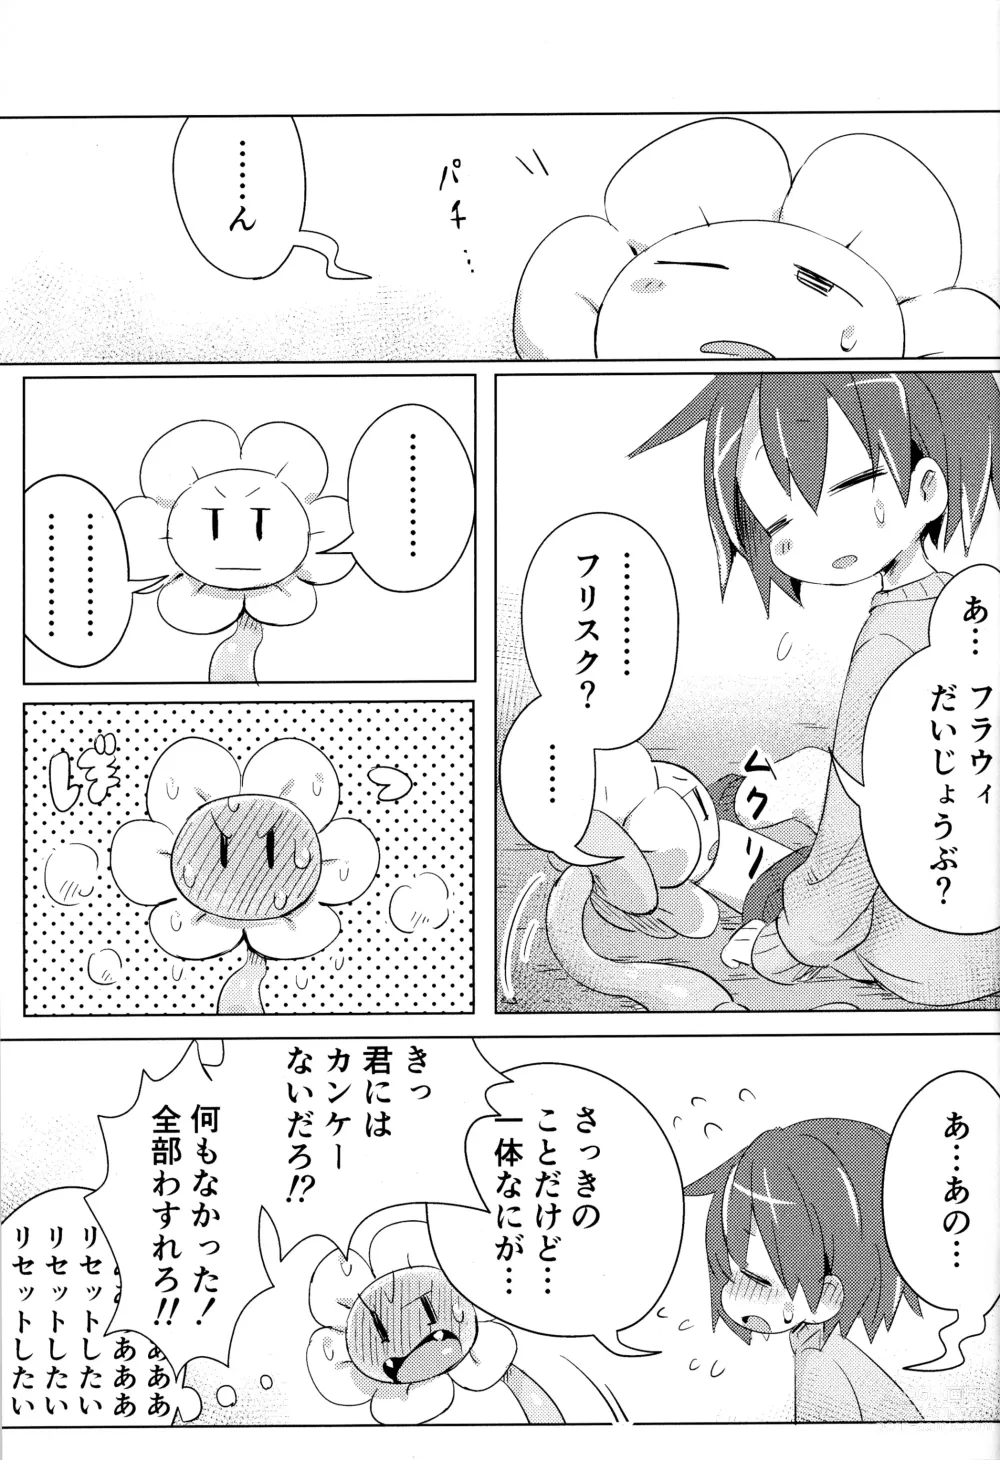 Page 22 of doujinshi Flowey, Daijoubu?